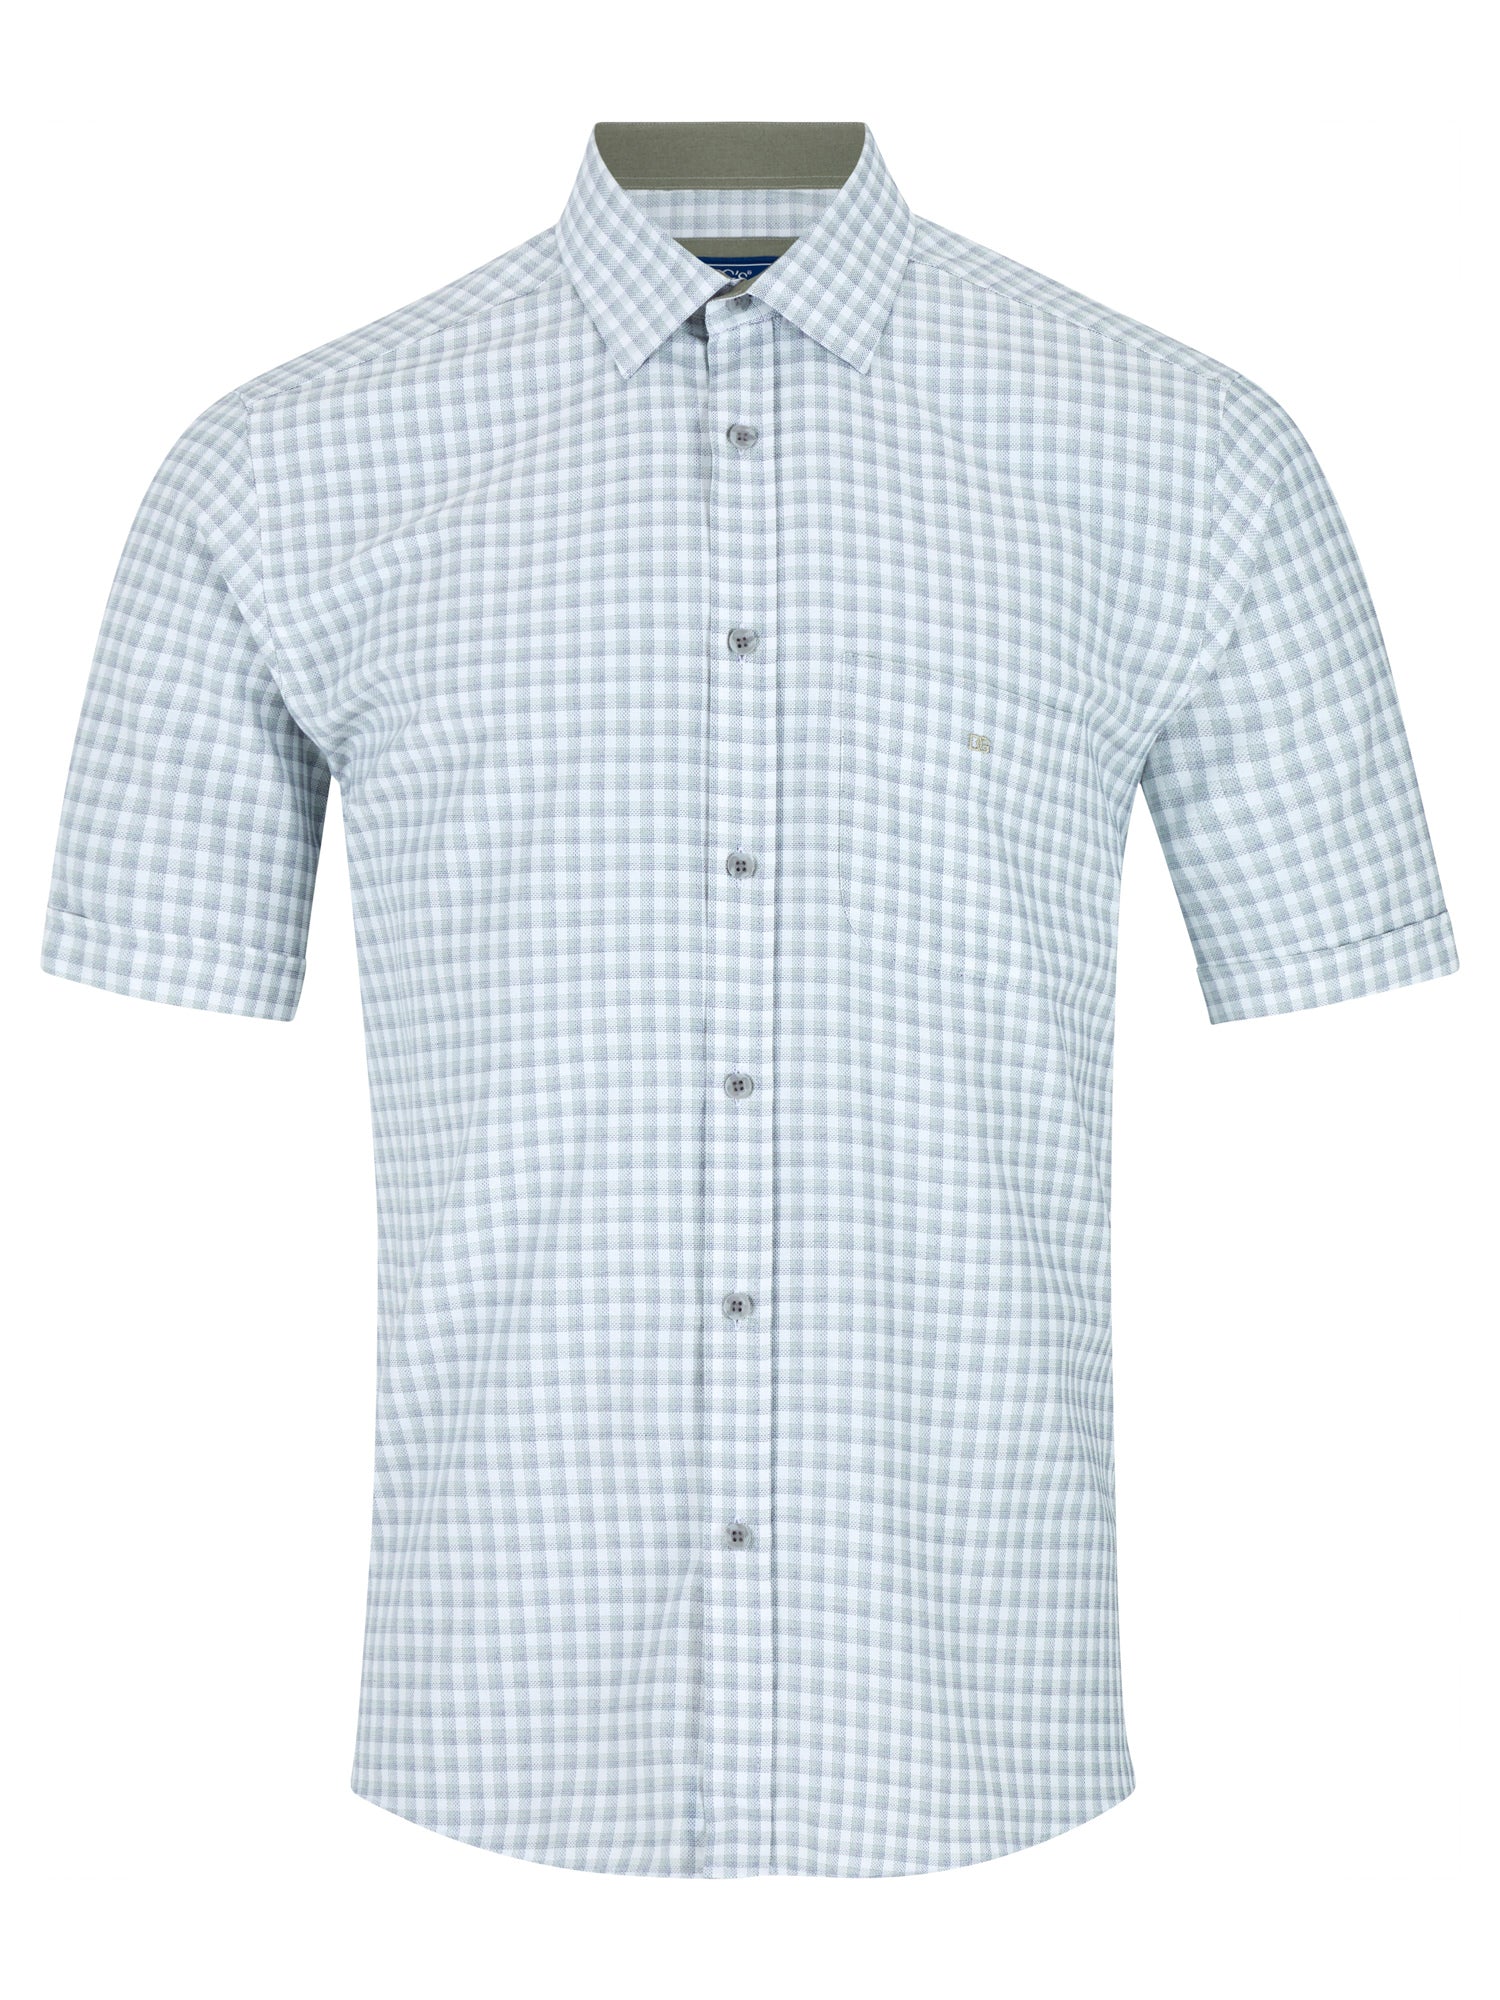 Drifter Short Sleeve Check Shirt 1 Shaws Department Stores